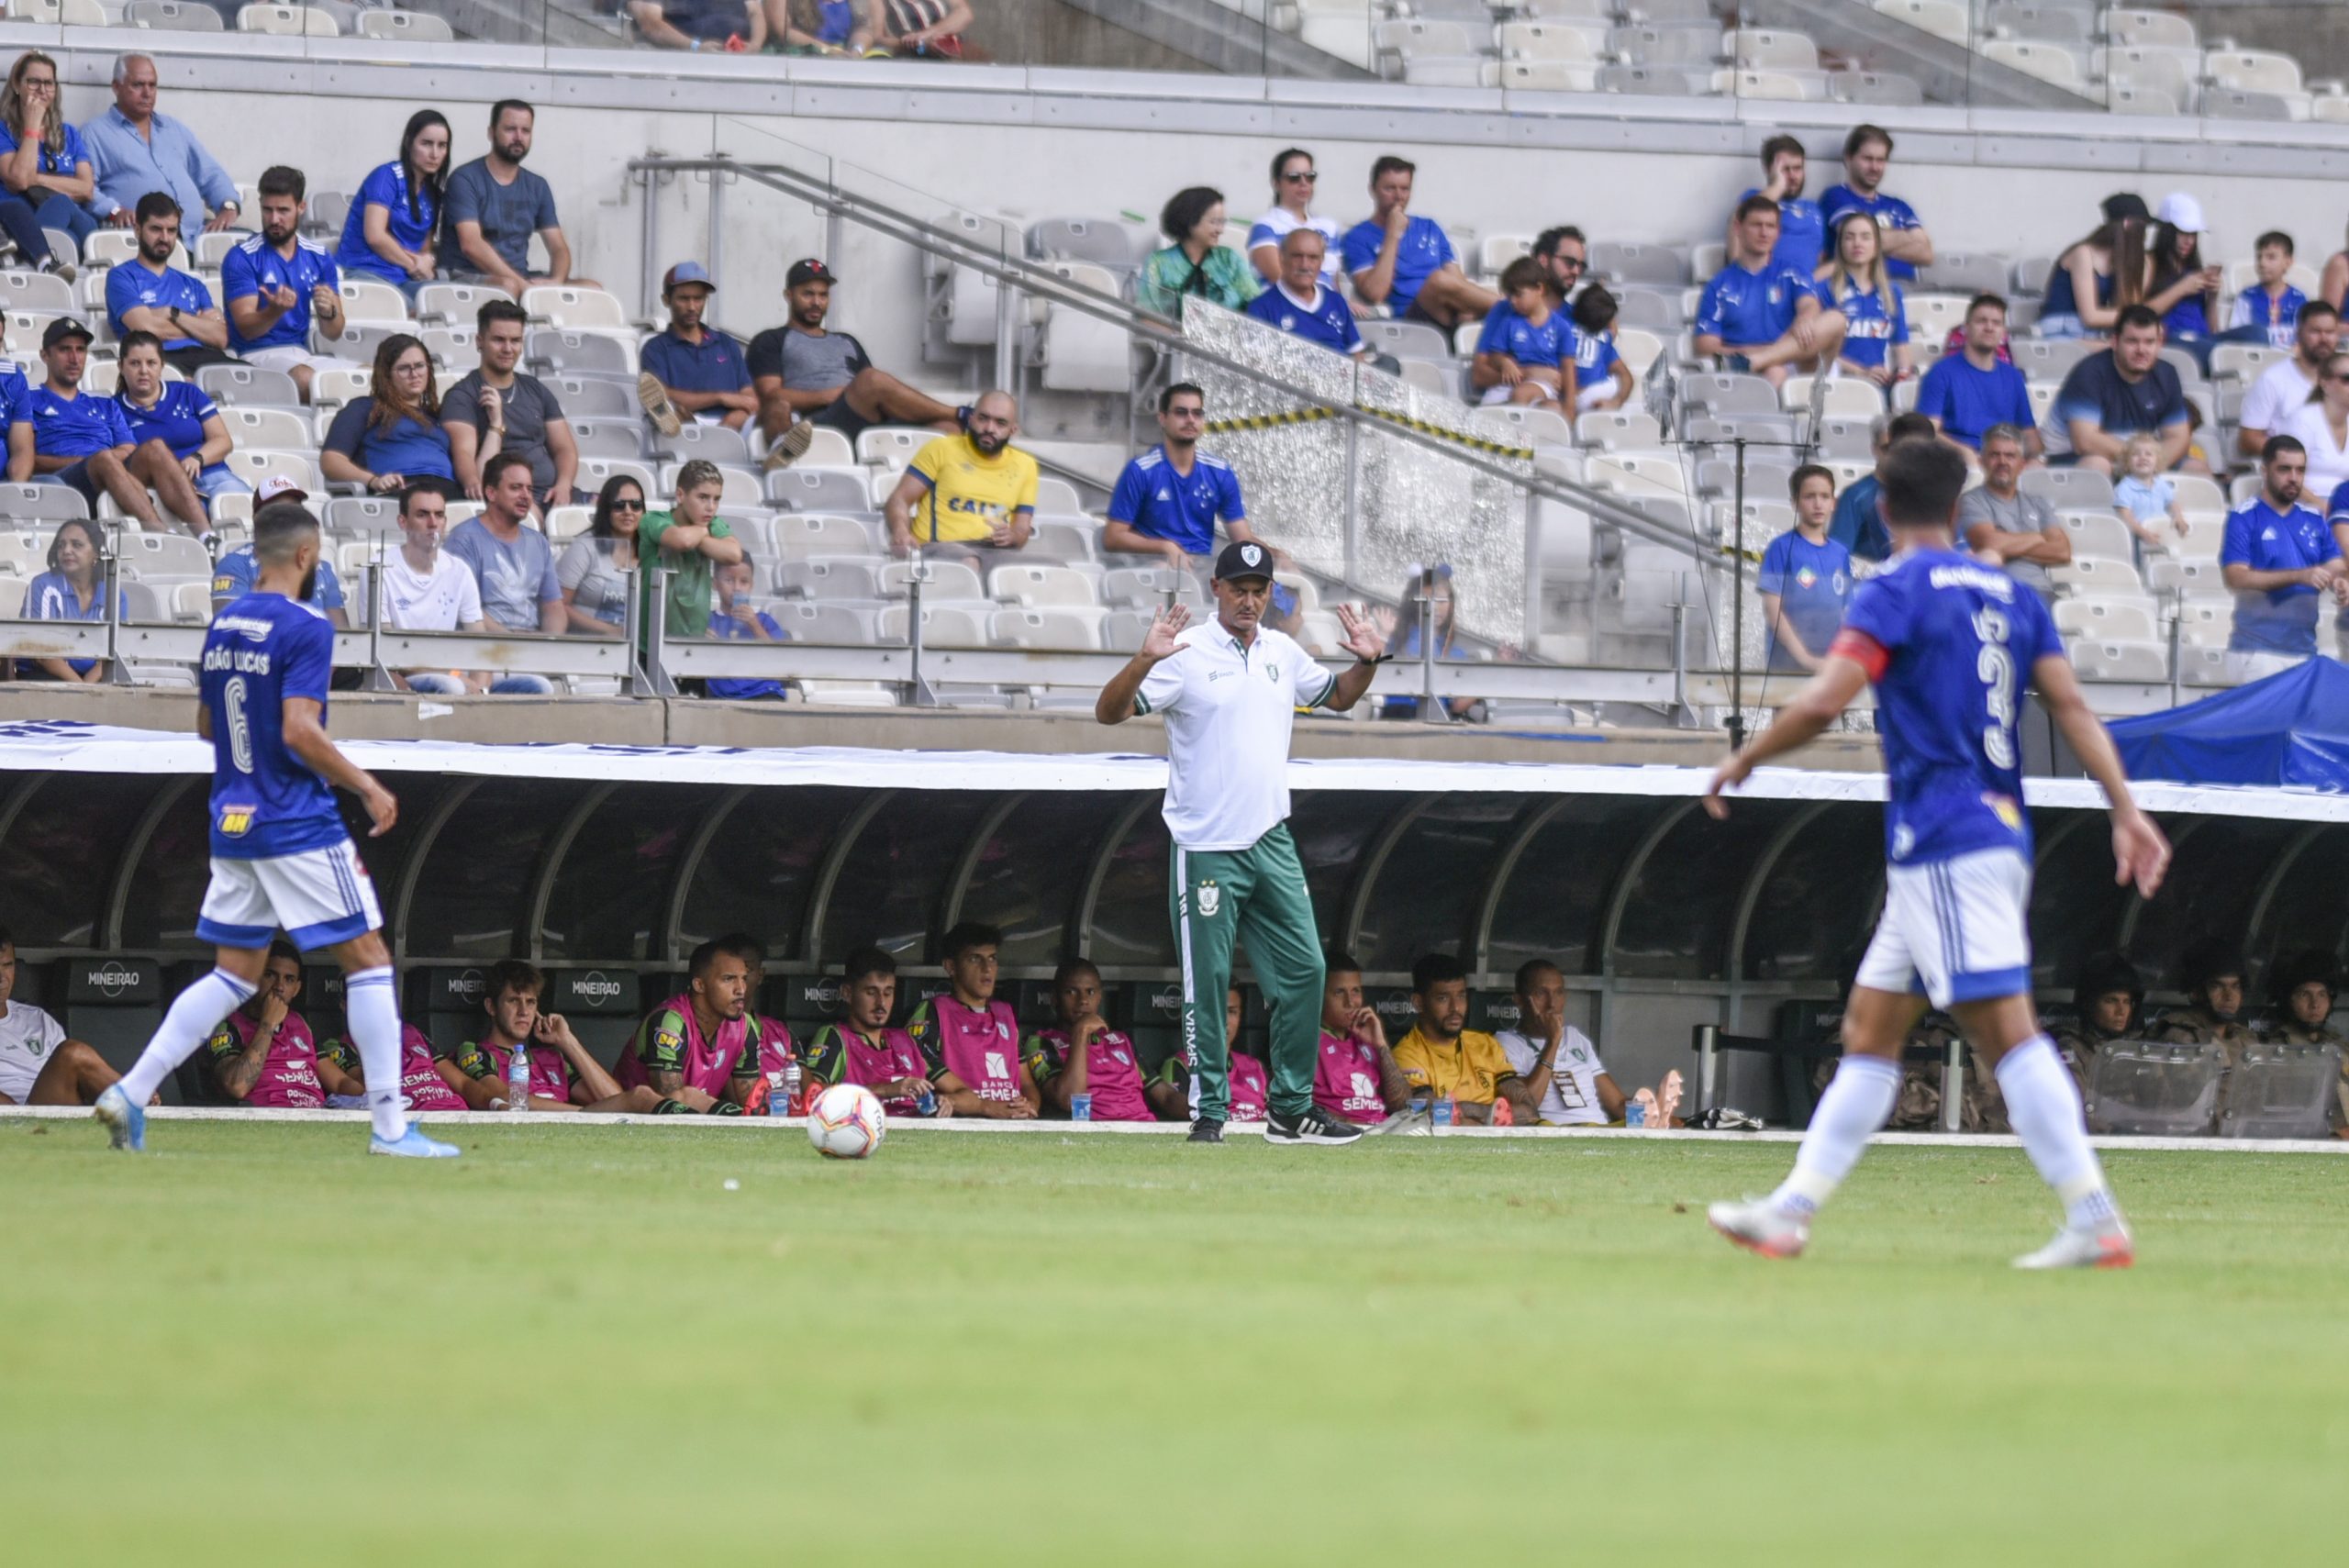 Na ‘Era Lisca’, América-MG leva vantagem em jogos contra o Cruzeiro